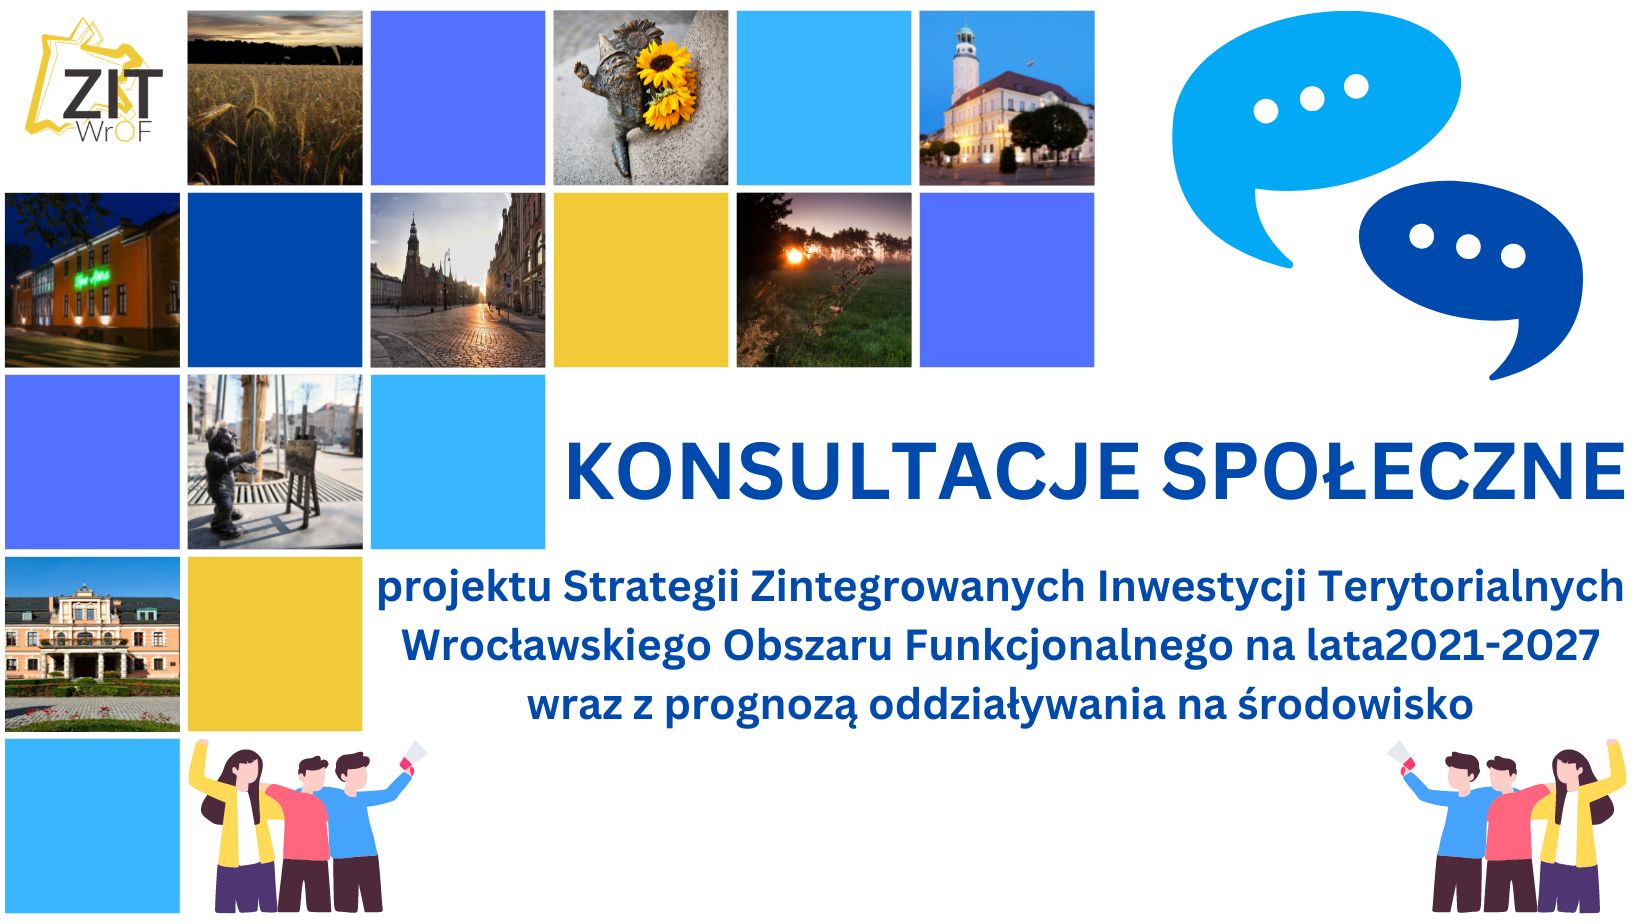 <strong>Konsultacje społeczne projektu Strategii Zintegrowanych Inwestycji Terytorialnych Wrocławskiego Obszaru Funkcjonalnego 2021-2027 wraz z prognozą oddziaływania na środowisko</strong>